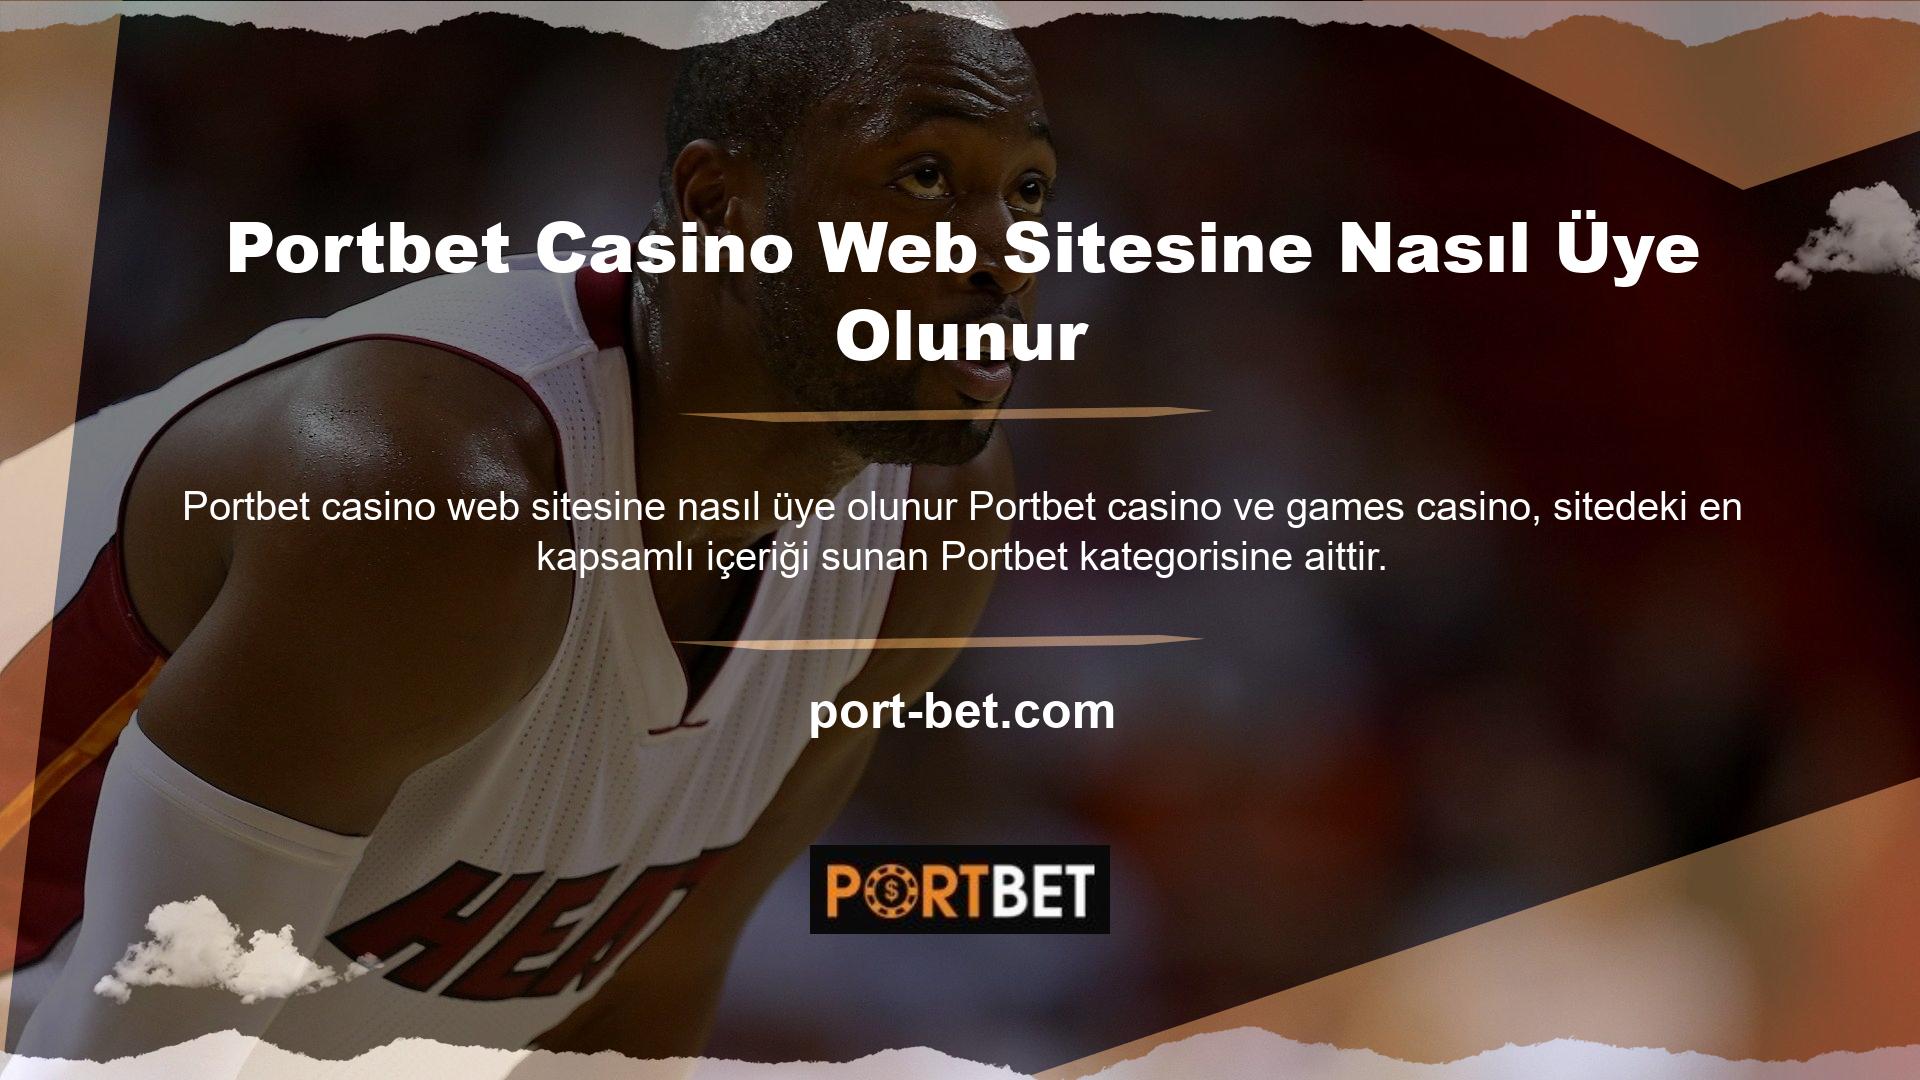 Bu web sitesinde oynamak ücretsizdir ve casino kategorisinde daha fazla oyun seçeneği sunar